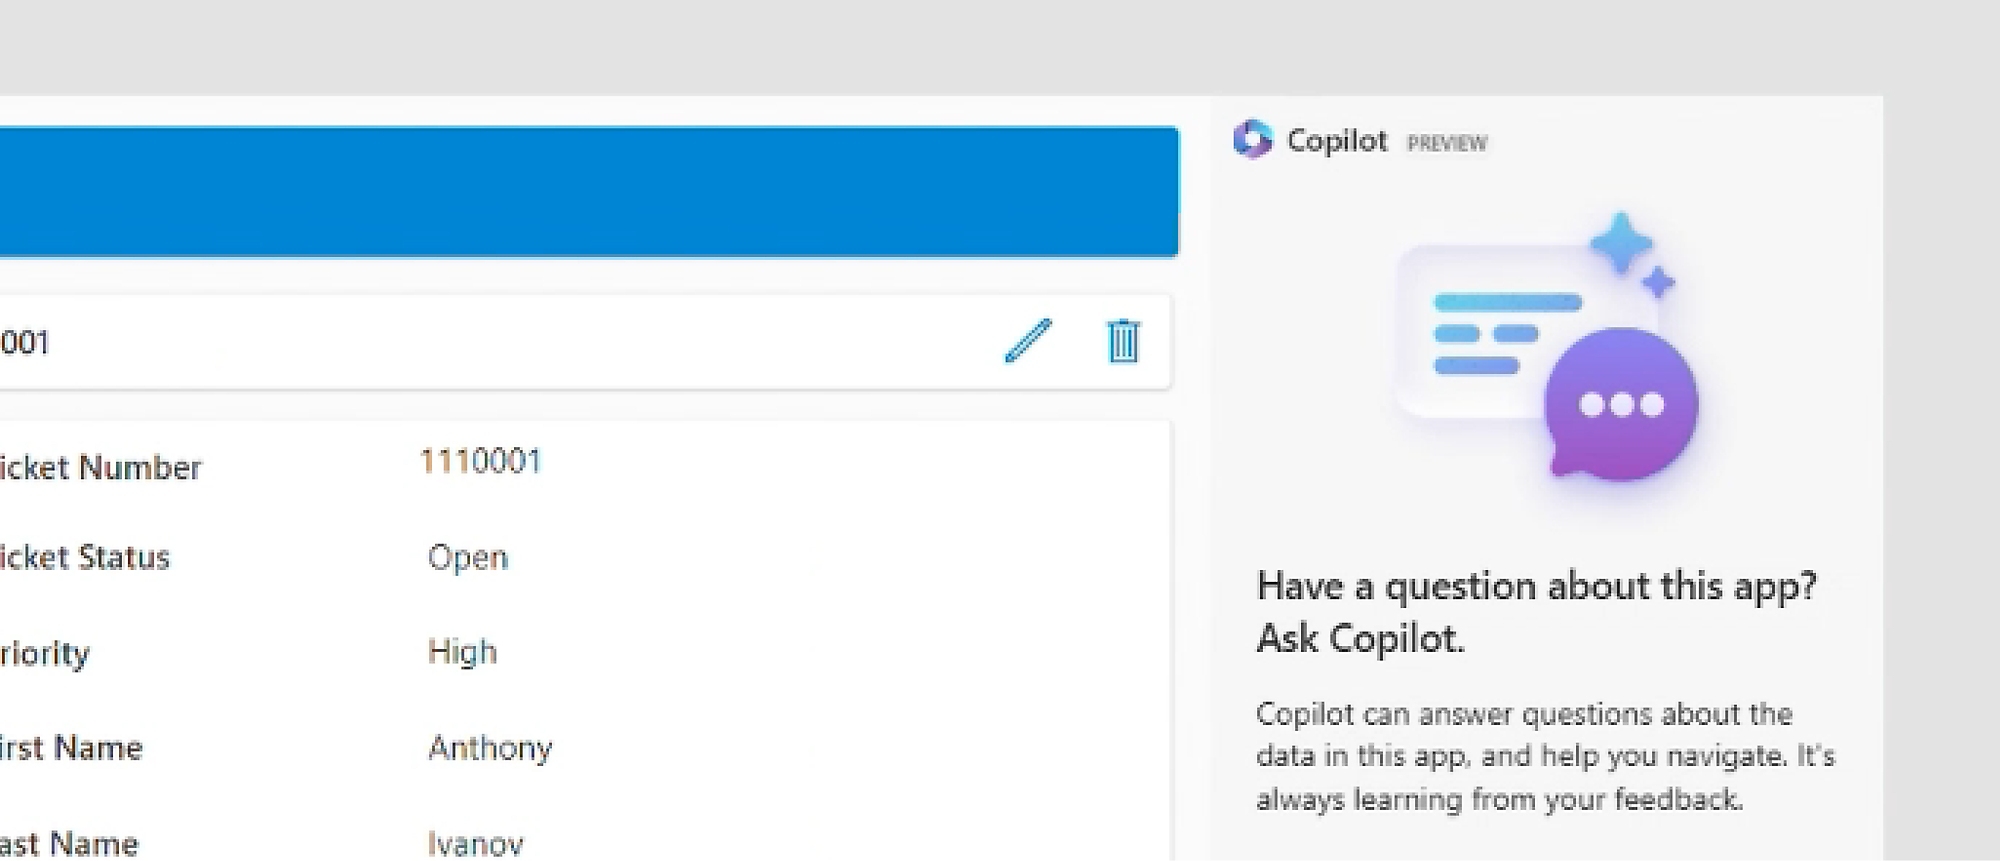 Snímka obrazovky služby Copilot v Power Apps s výzvou, aby sa používateľ spýtal služby Copilot na otázky týkajúce sa aplikácie